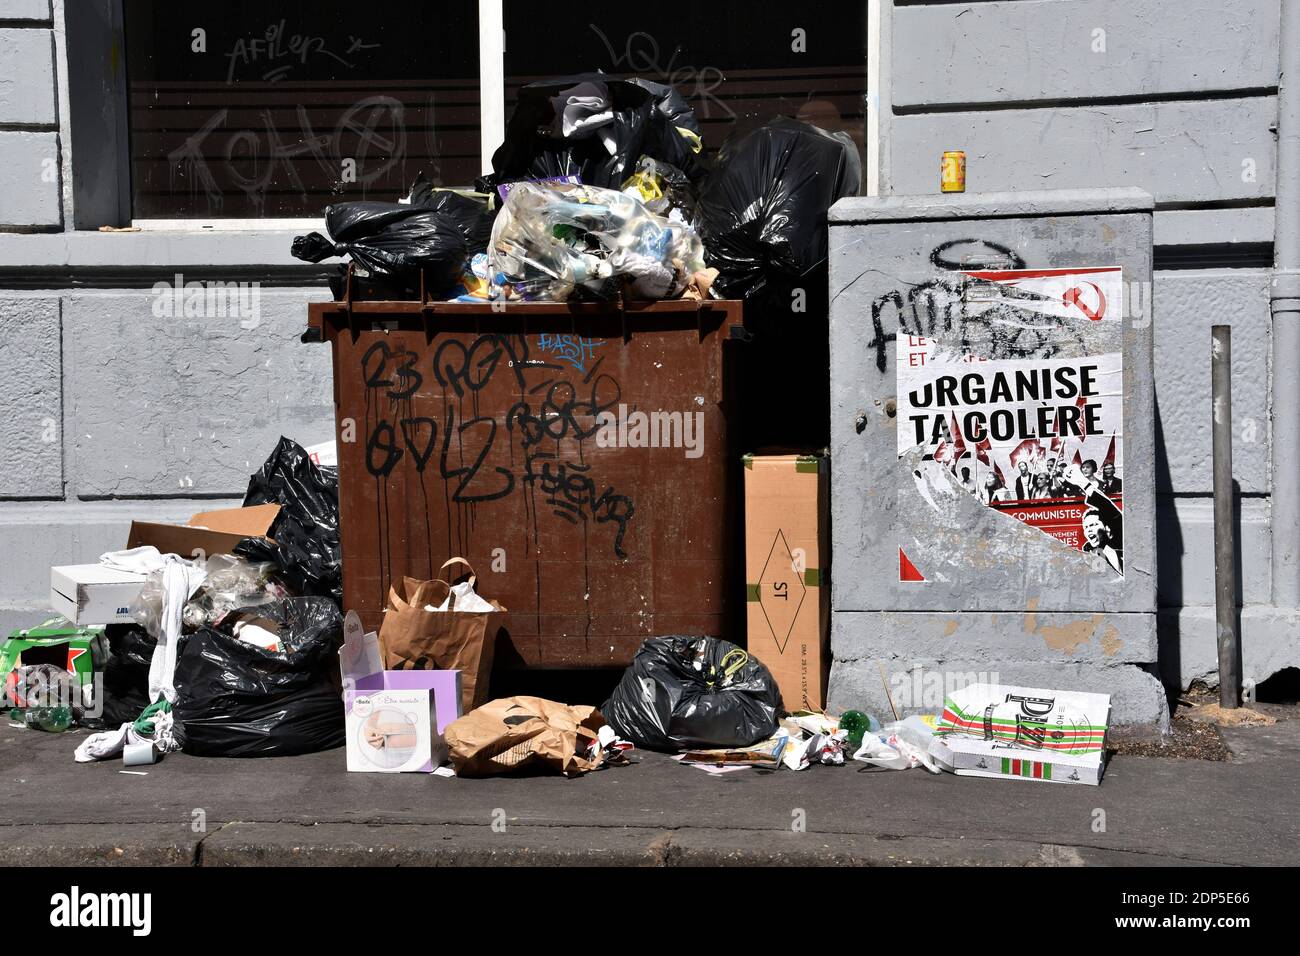 Ein überlaufender Müllcontainer während des Streiks.Müllsammler-Streik, der den Ersatz von Direktor Pascal Chauffour und seinem Stellvertreter, Herrn Mirek, fordert, die in ihren Augen sichtbar "diktatorisch und gleichgültig gegenüber ihrem Unwesen" sind, sowie die Möglichkeit, "unter menschenwürdigen Bedingungen zu arbeiten. Stockfoto